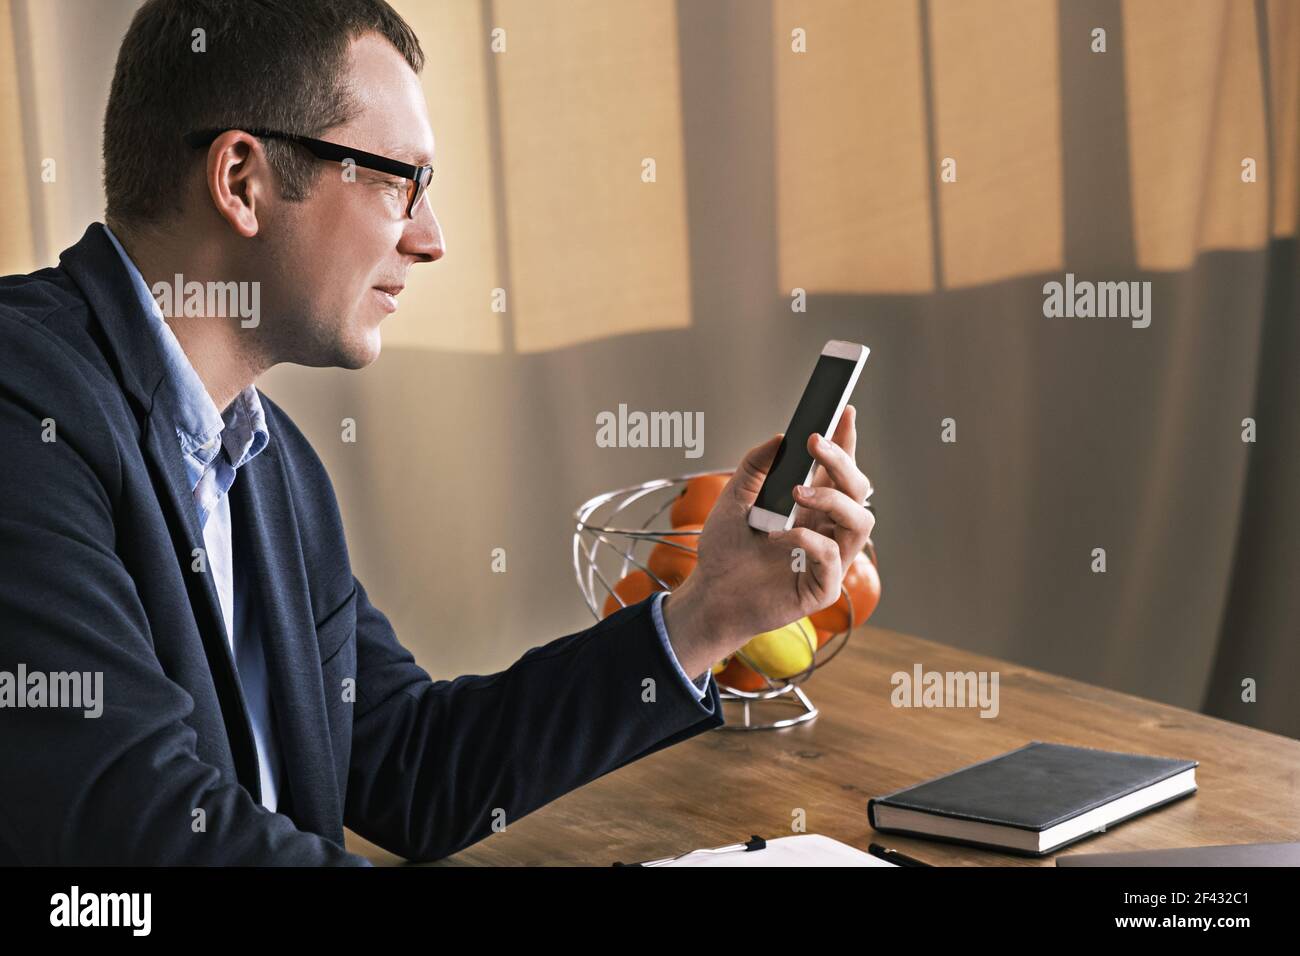 Jeune homme d'affaires portant un costume et des lunettes regardant son mobile téléphone assis à une table Banque D'Images